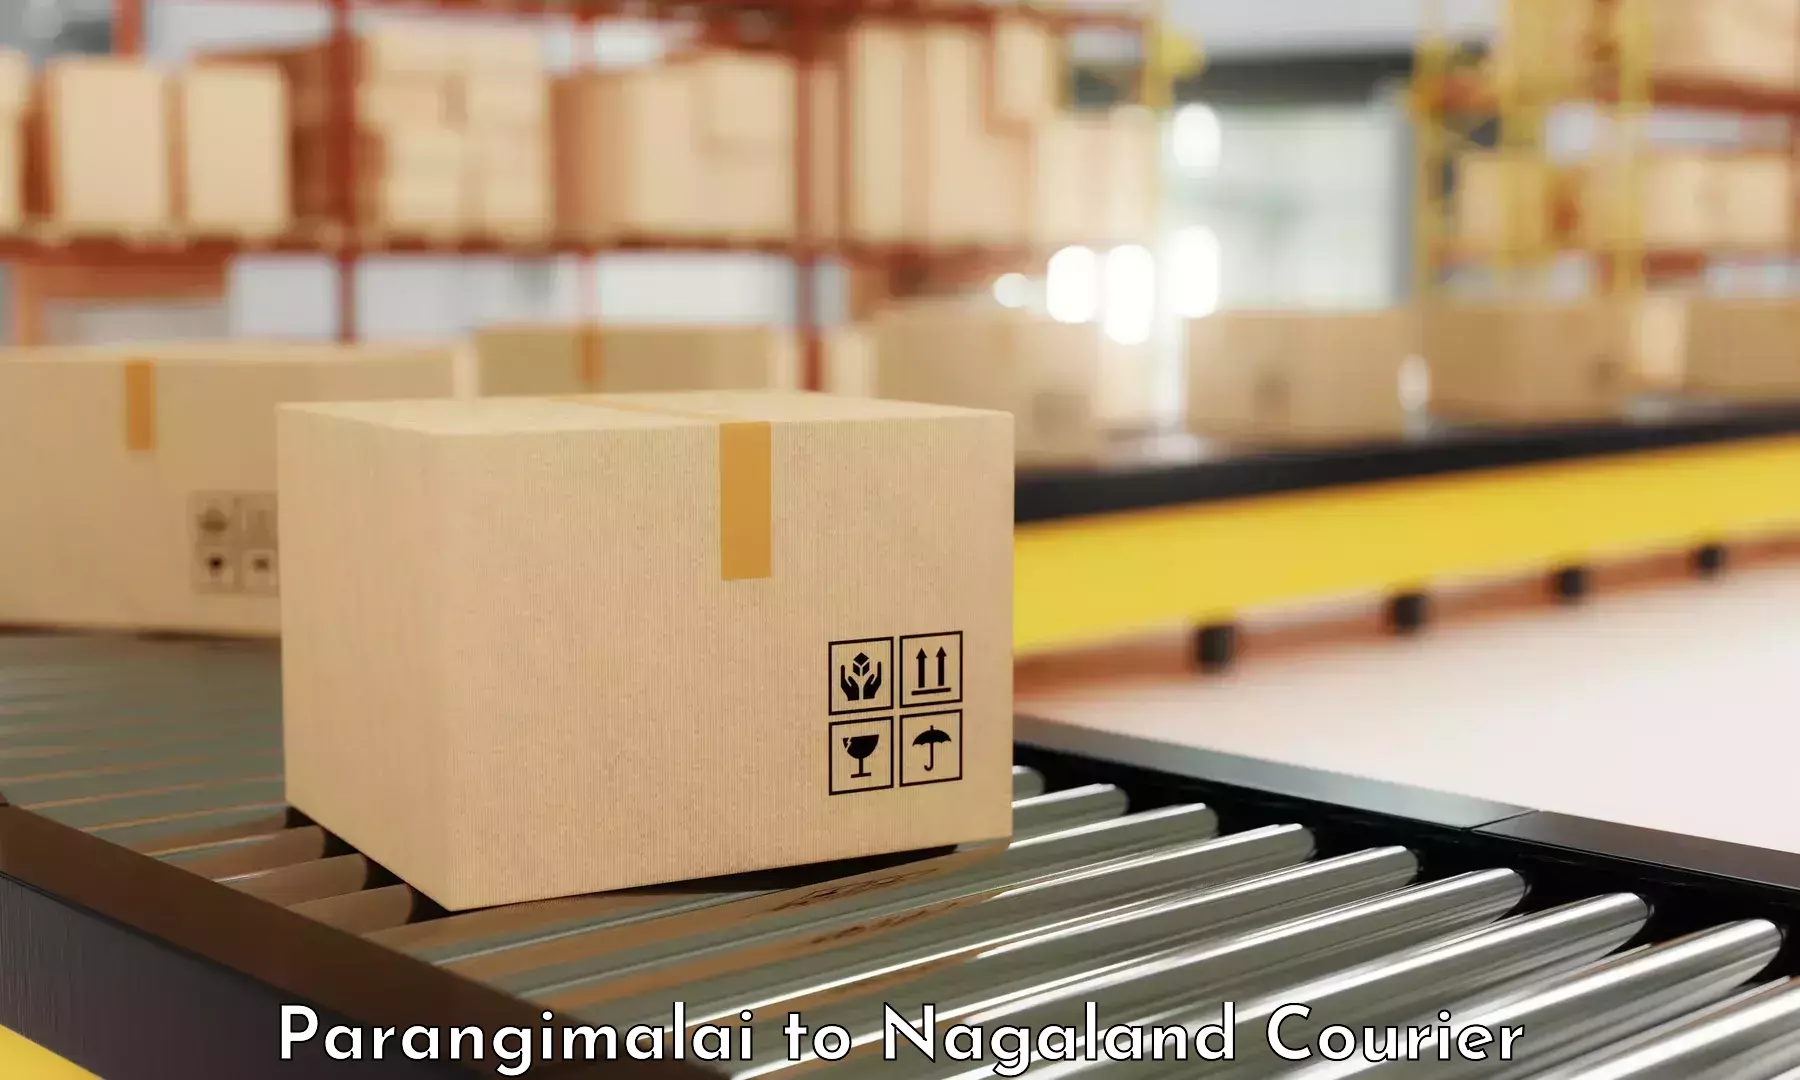 Modern courier technology Parangimalai to NIT Nagaland